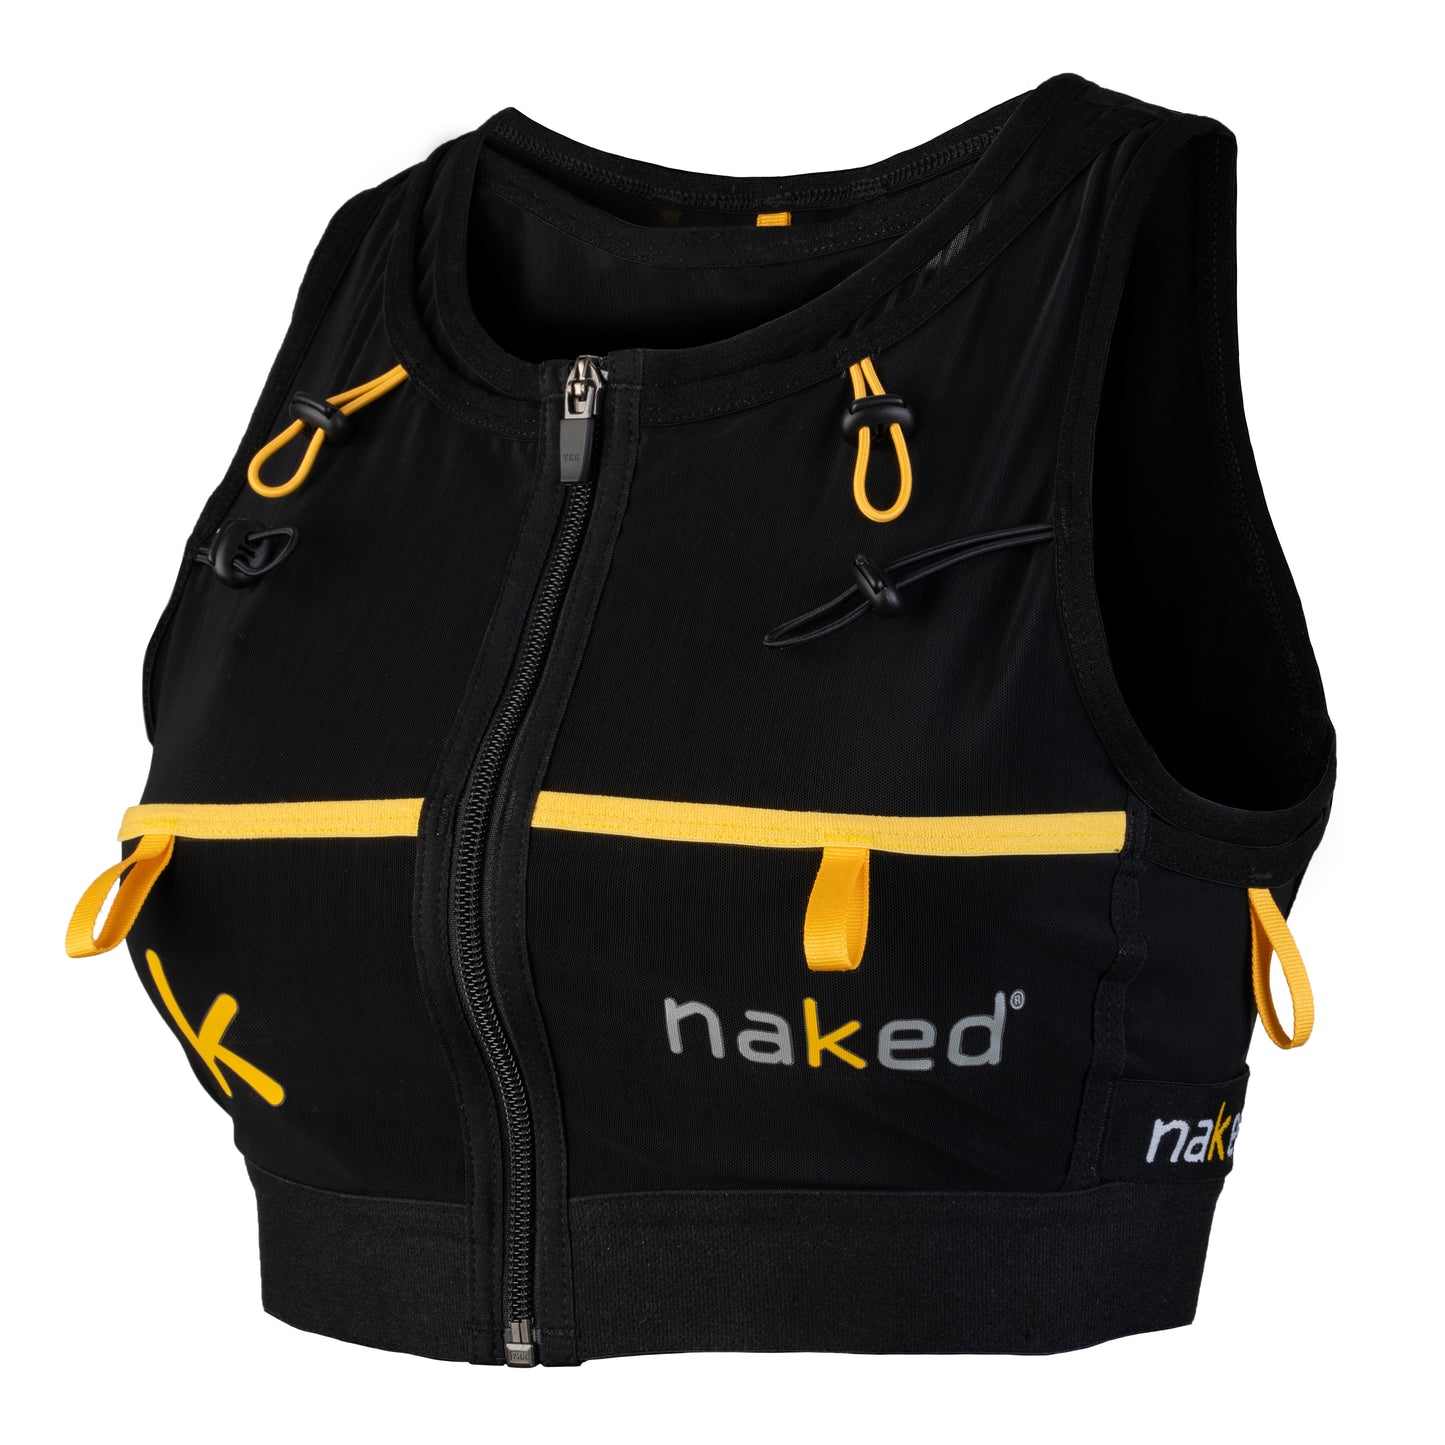 Naked Running Vest - High Capacity for Women